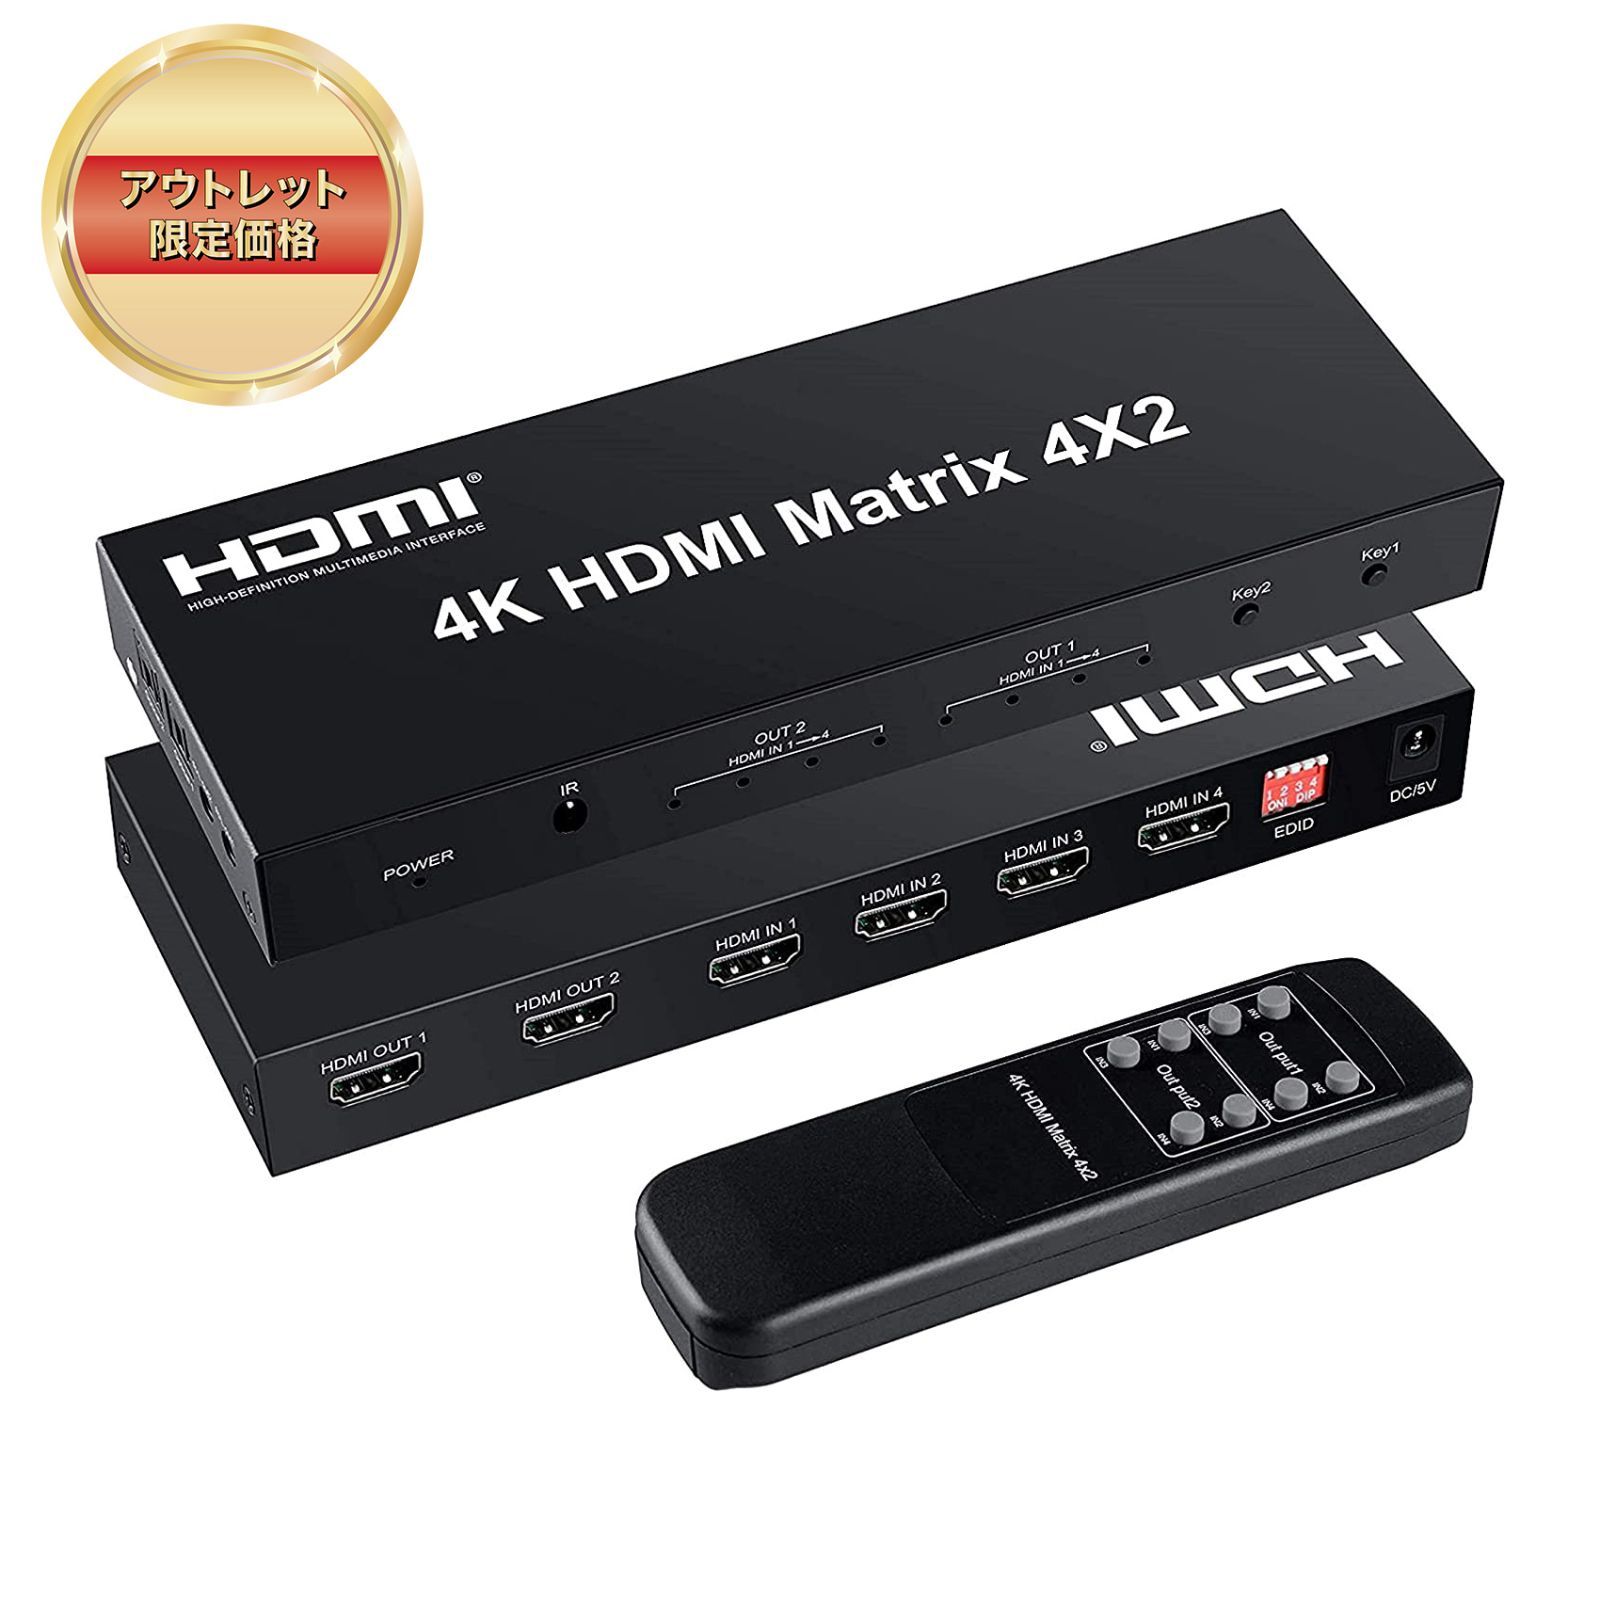 未使用品】4K HDMI マトリックス セレクター【大特価】311-25 フジデンキ アウトレット館 メルカリ